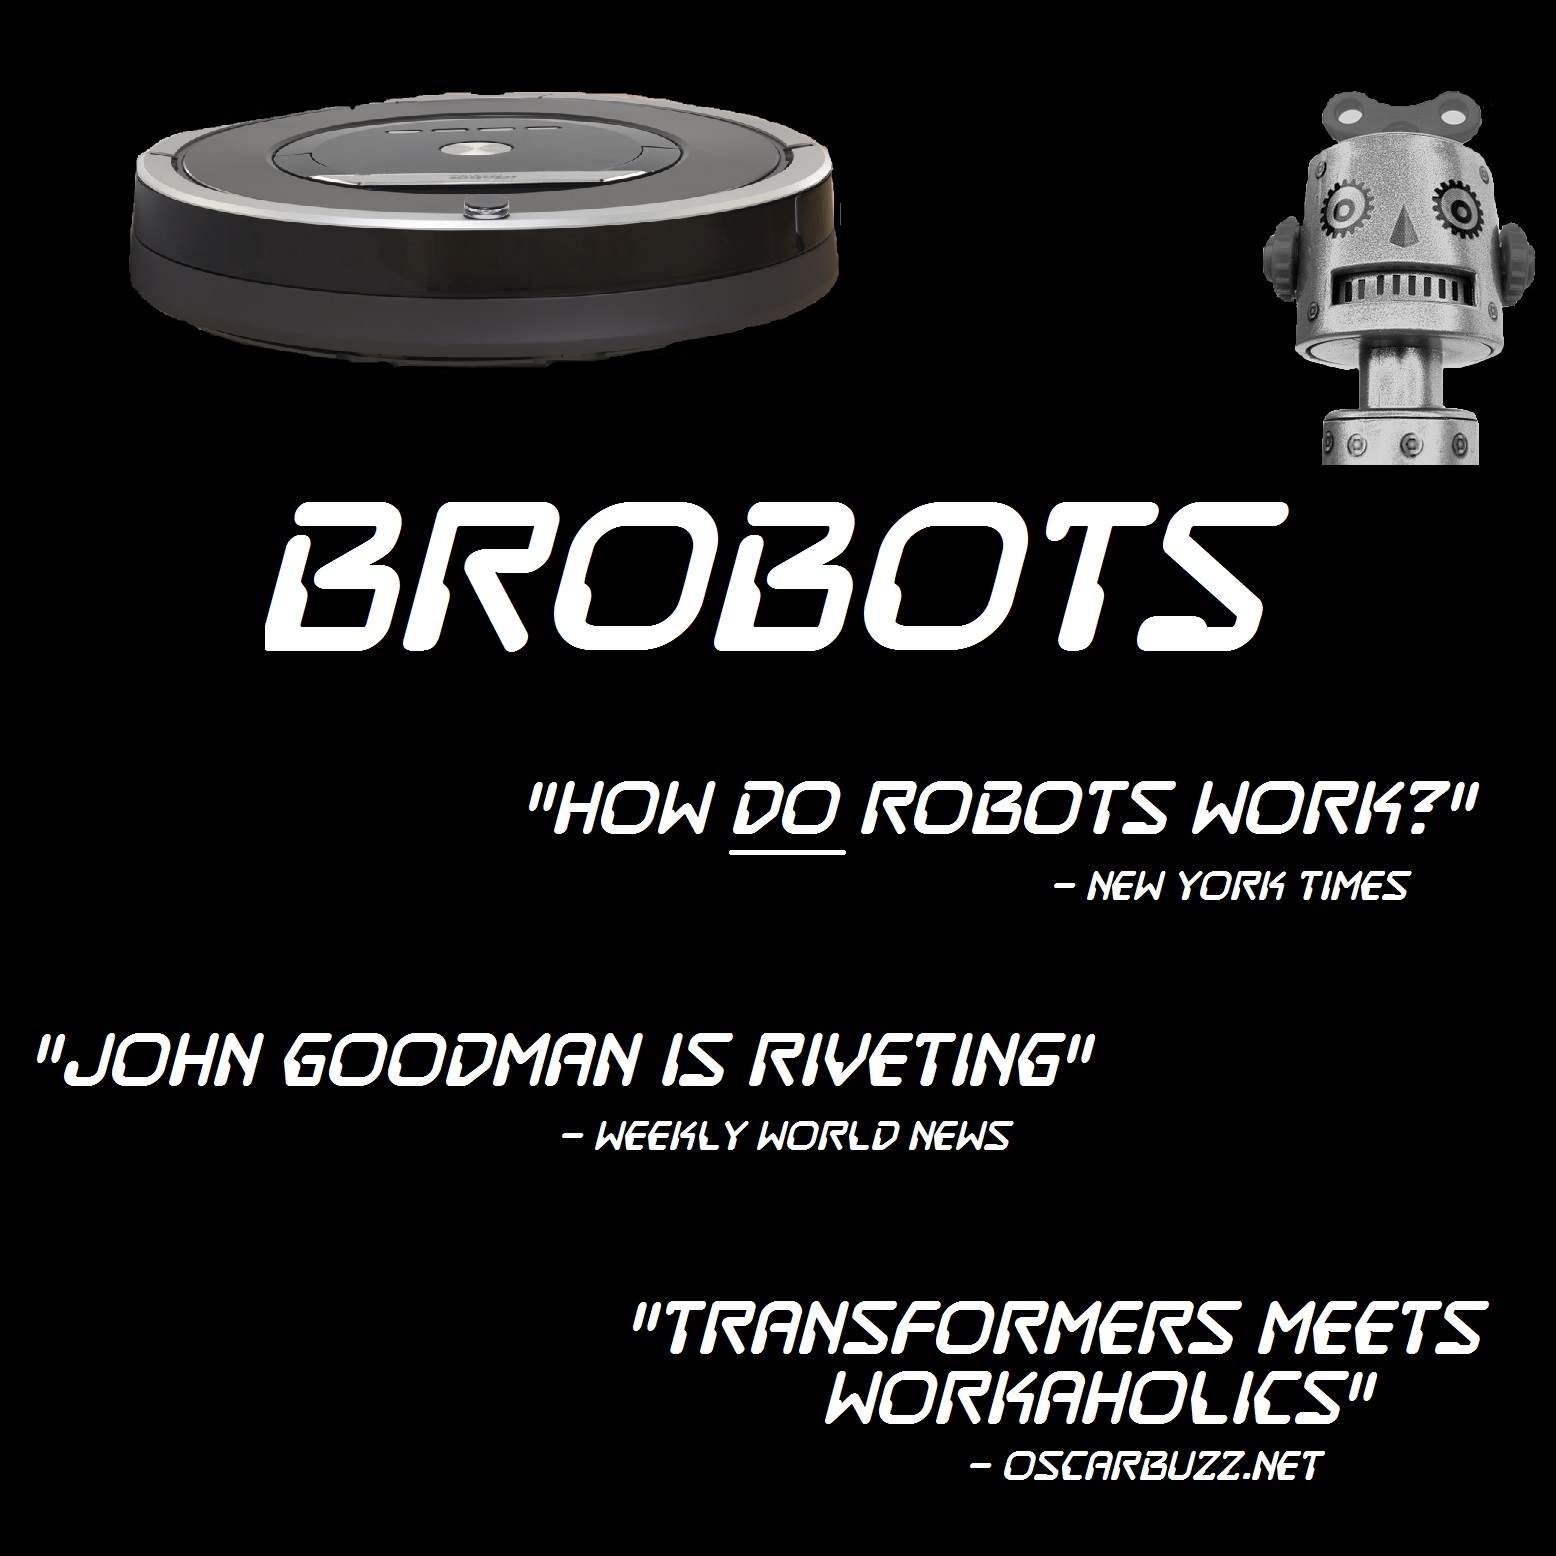 Episode 32 - Brobots